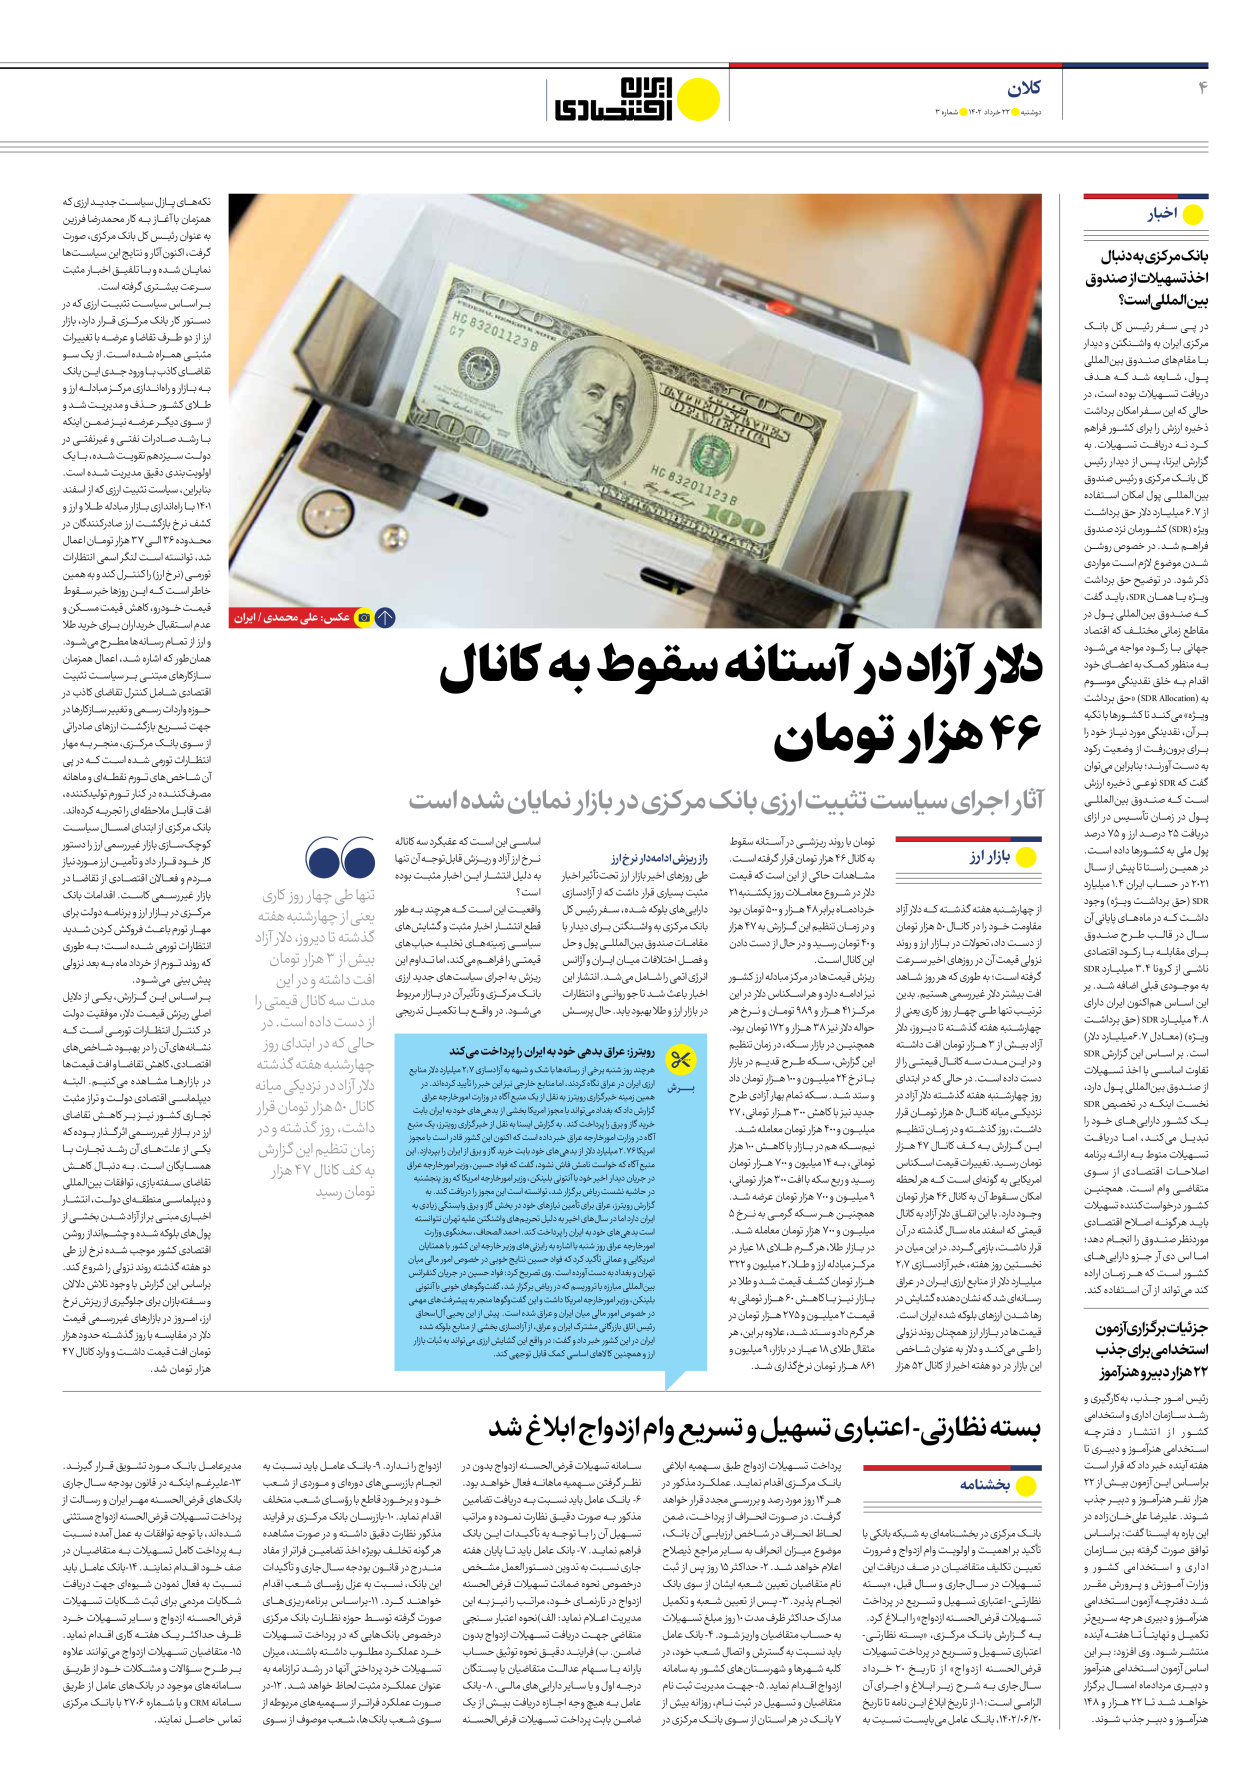 روزنامه ایران اقتصادی - شماره سه - ۲۲ خرداد ۱۴۰۲ - صفحه ۴